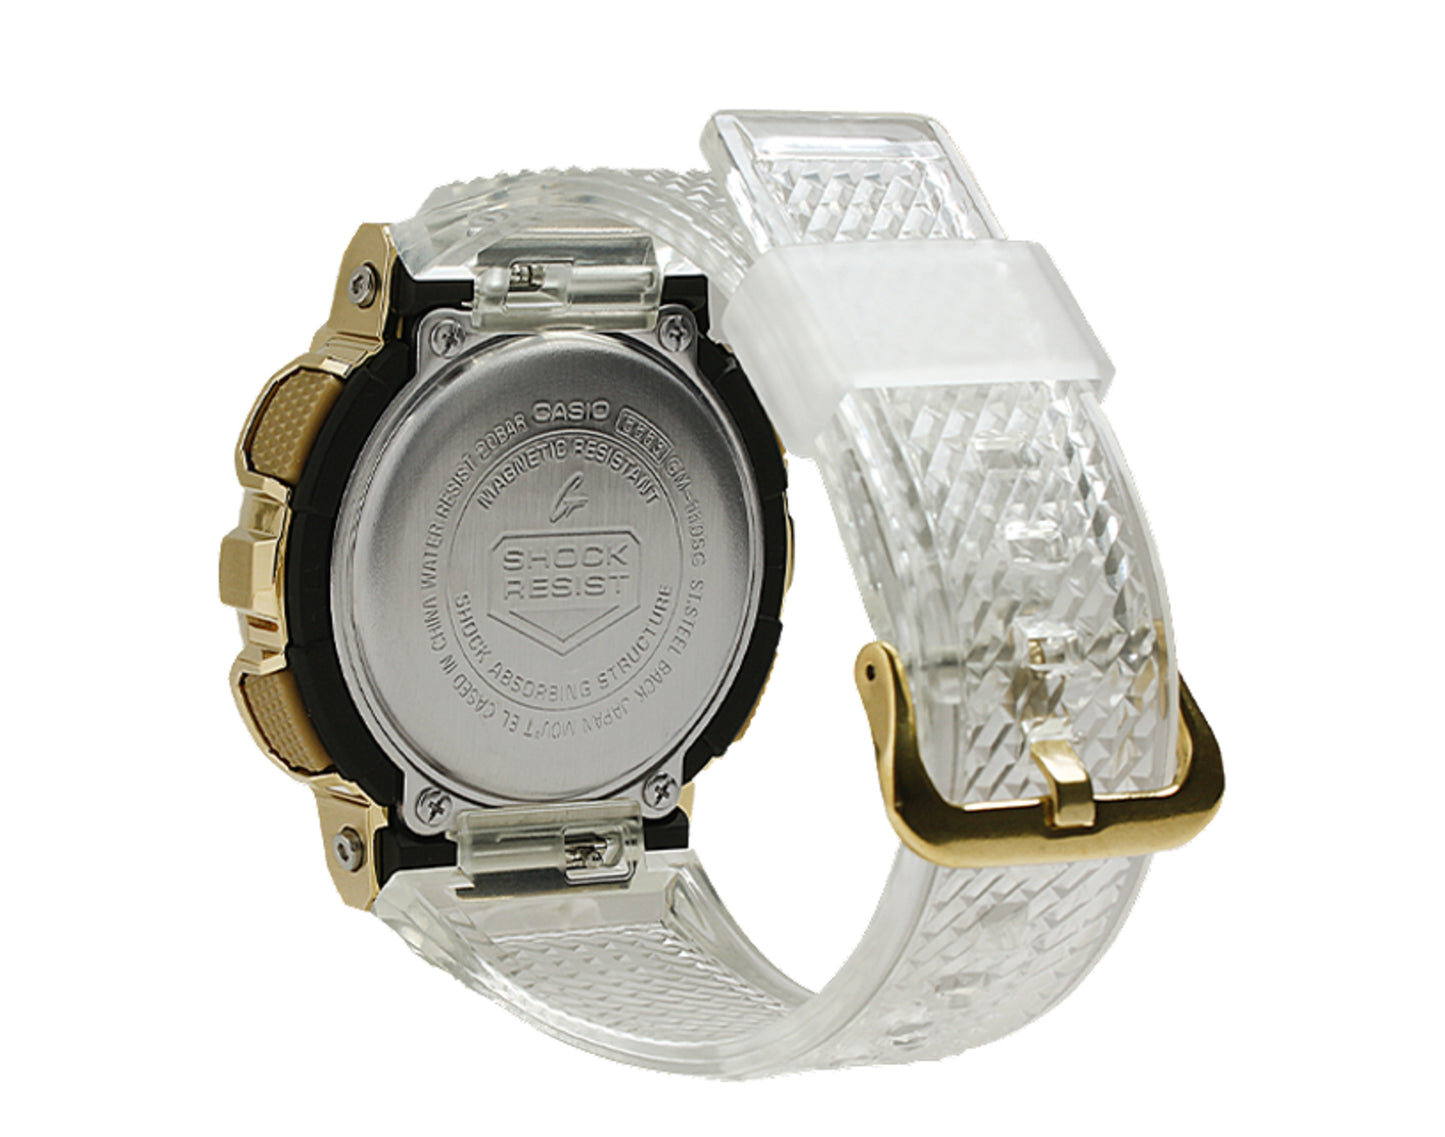 Casio G-Shock GM110SG GOLD INGOT Analog-Digital Metal-Resin Watch